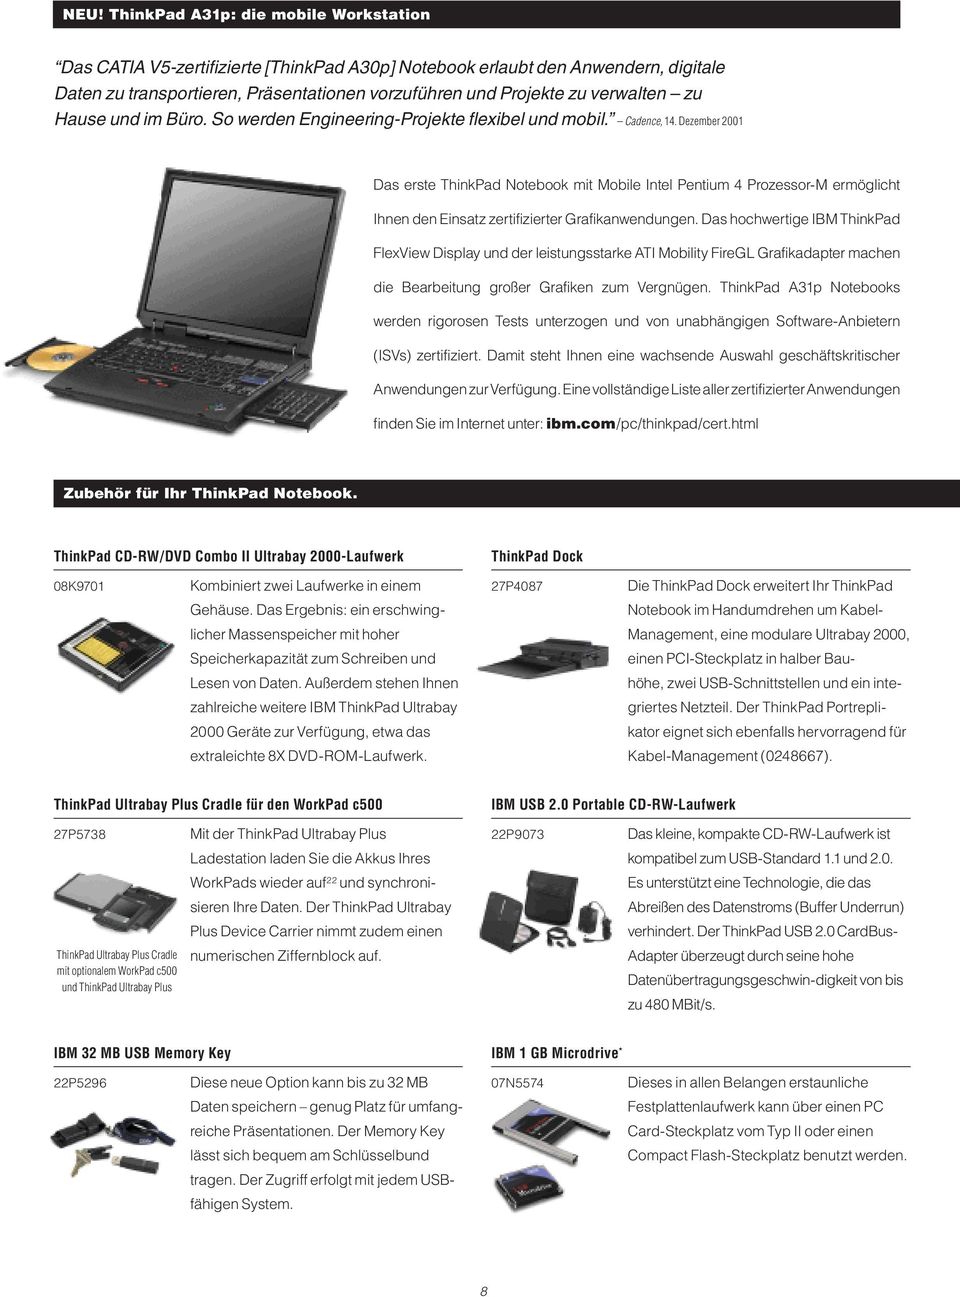 Dezember 2001 Das erste ThinkPad Notebook mit Mobile Intel Pentium 4 Prozessor-M ermöglicht Ihnen den Einsatz zertifizierter Grafikanwendungen.